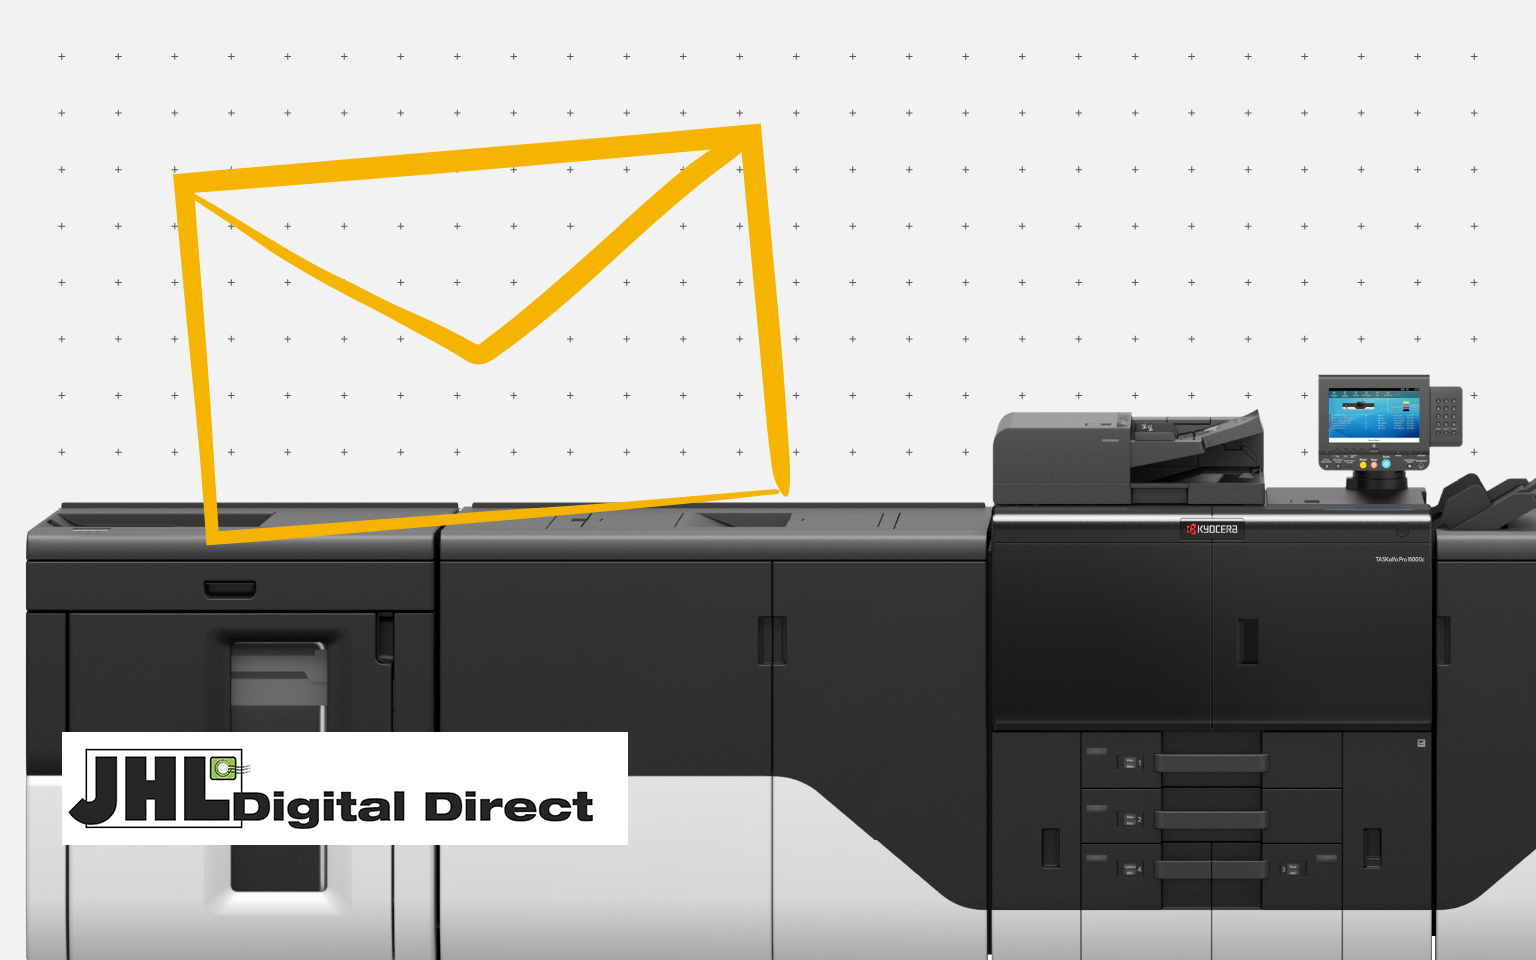 Reforzando las cuentas de JHL Digital Direct con la inyección de tinta